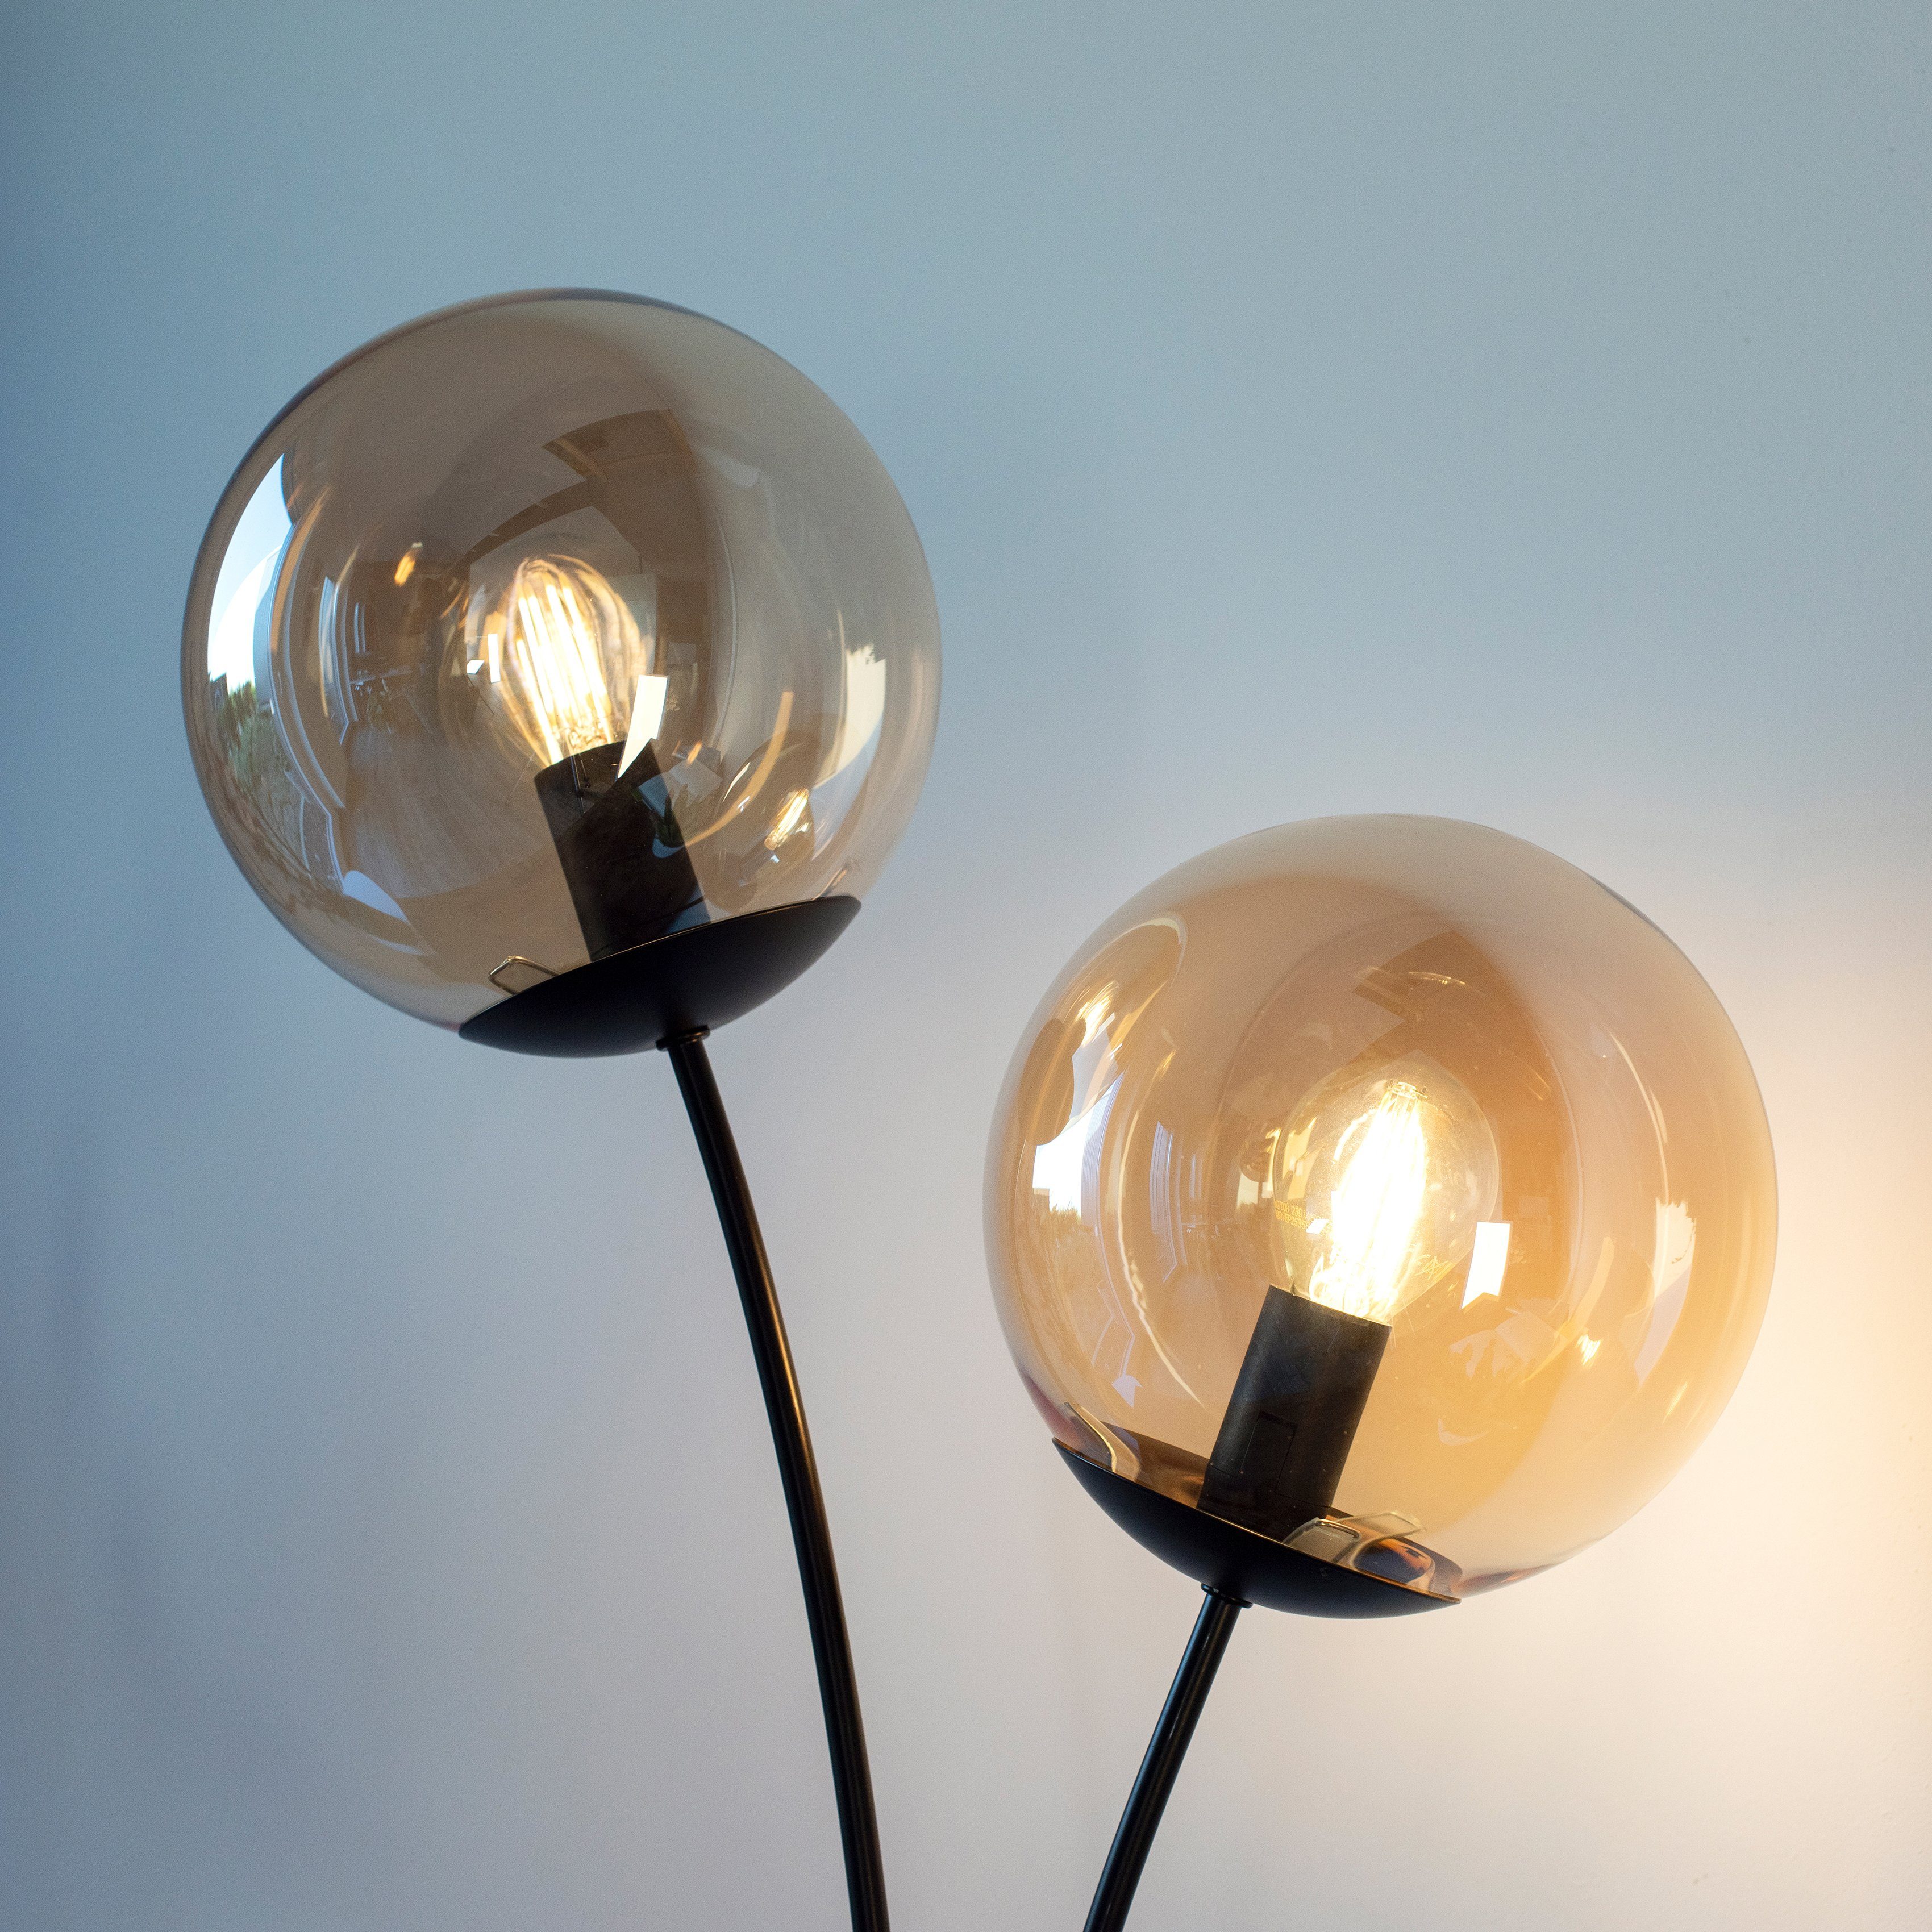 andas Stehlampe Nymölla, Ein-/Ausschalter, ohne Oberfläche Leuchtmittel, mit Glaskörpern, amberfarbigen großen lackiert schwarz